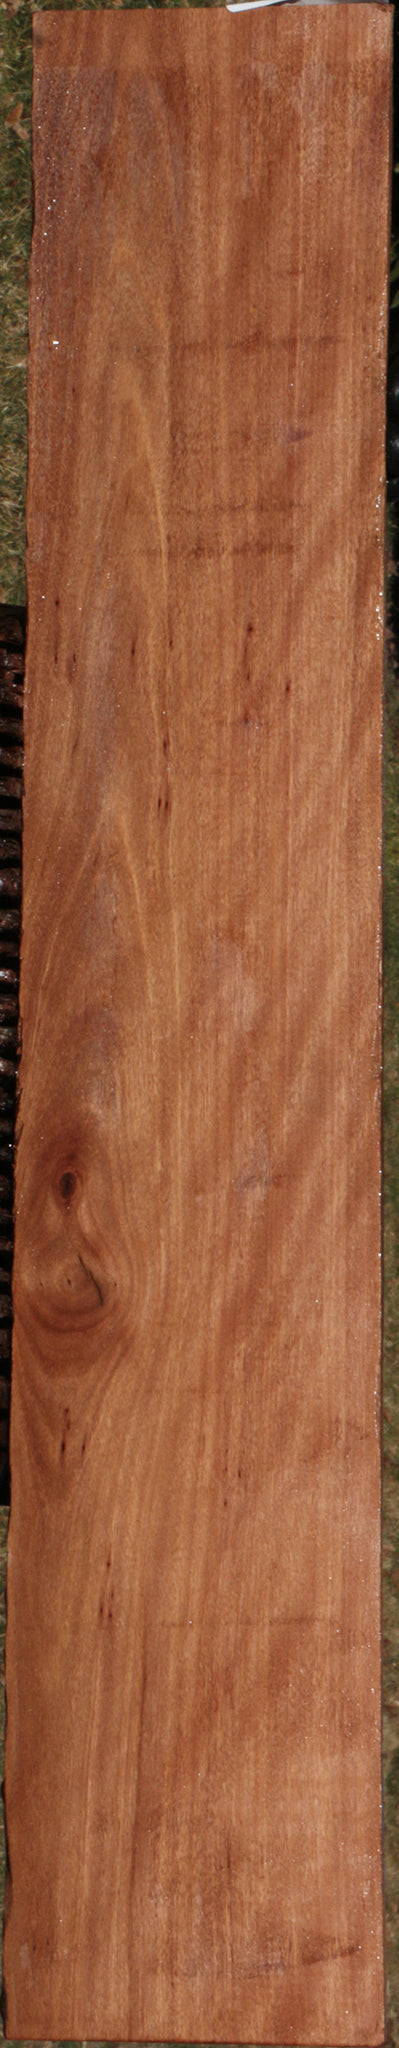 Extra Fancy Brush Box Micro Lumber